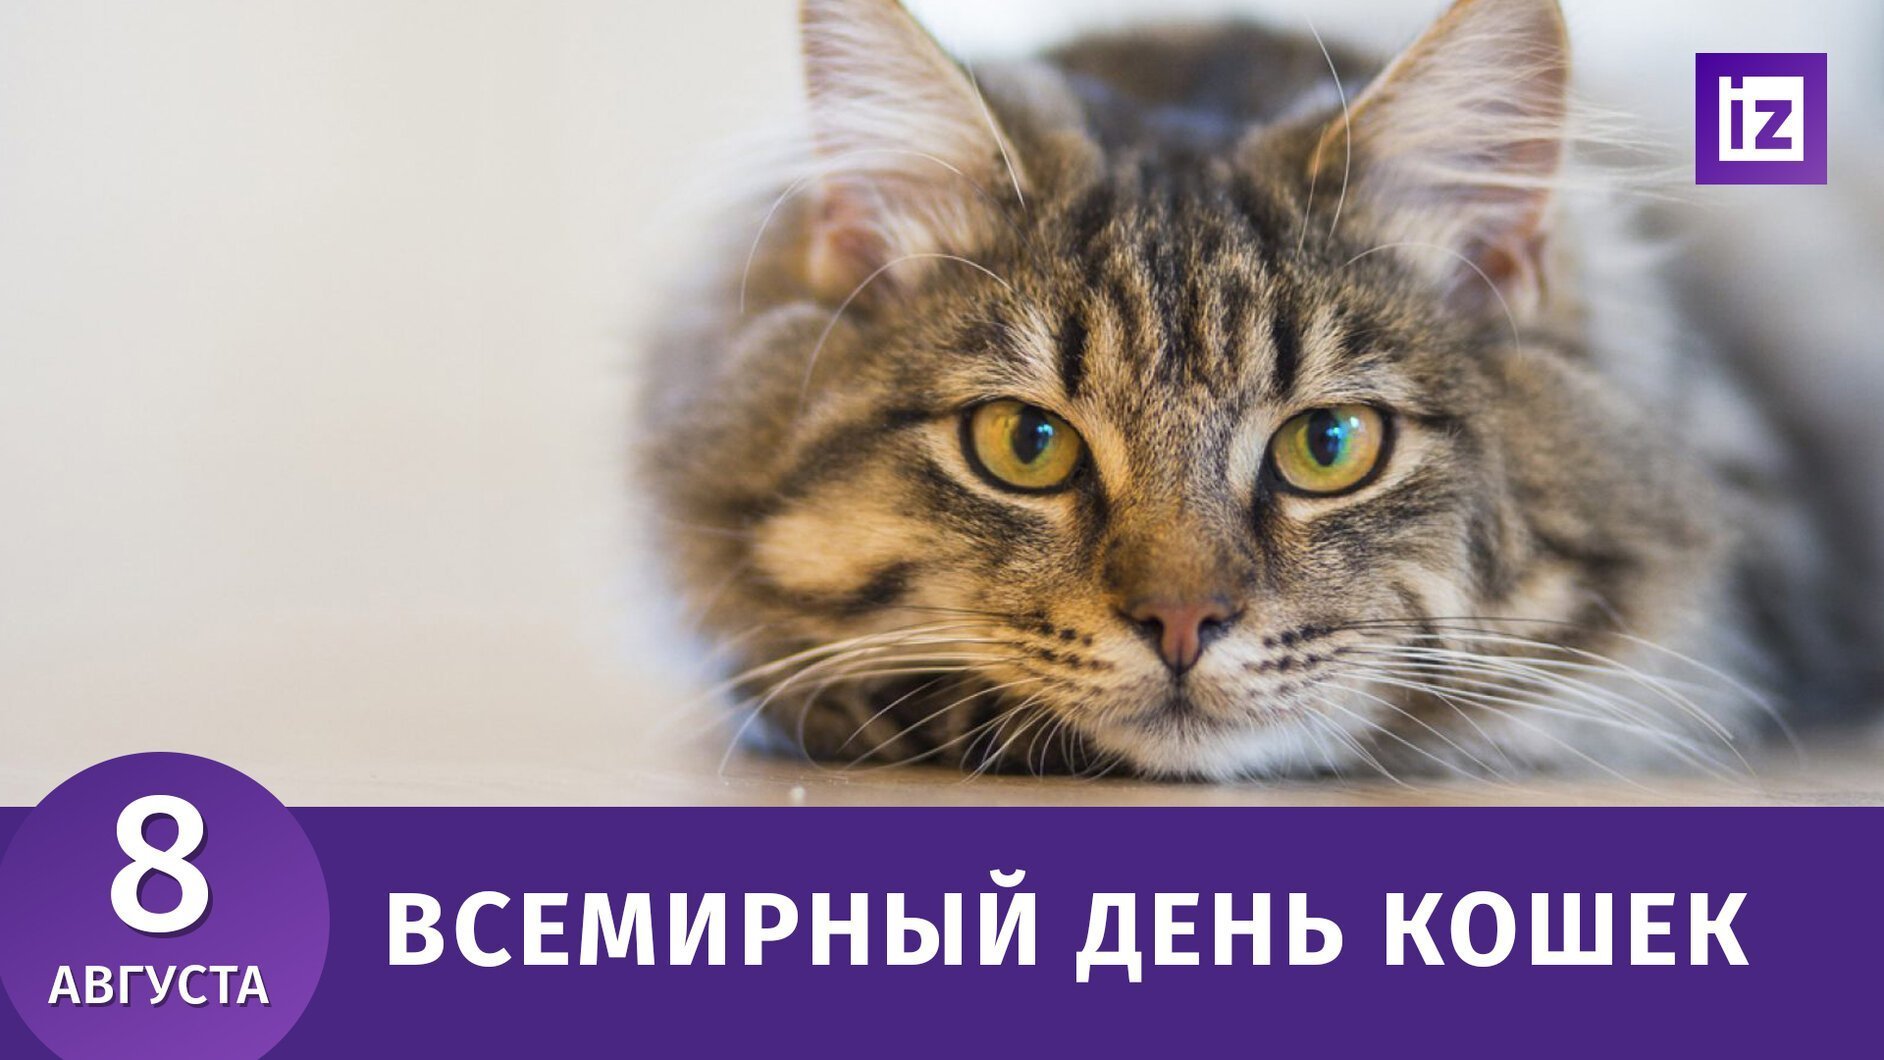 День котиков в россии. Всемирный день кошек. Всемирный день кошек 8 августа. Всемирный день кошек 2021 8 августа.